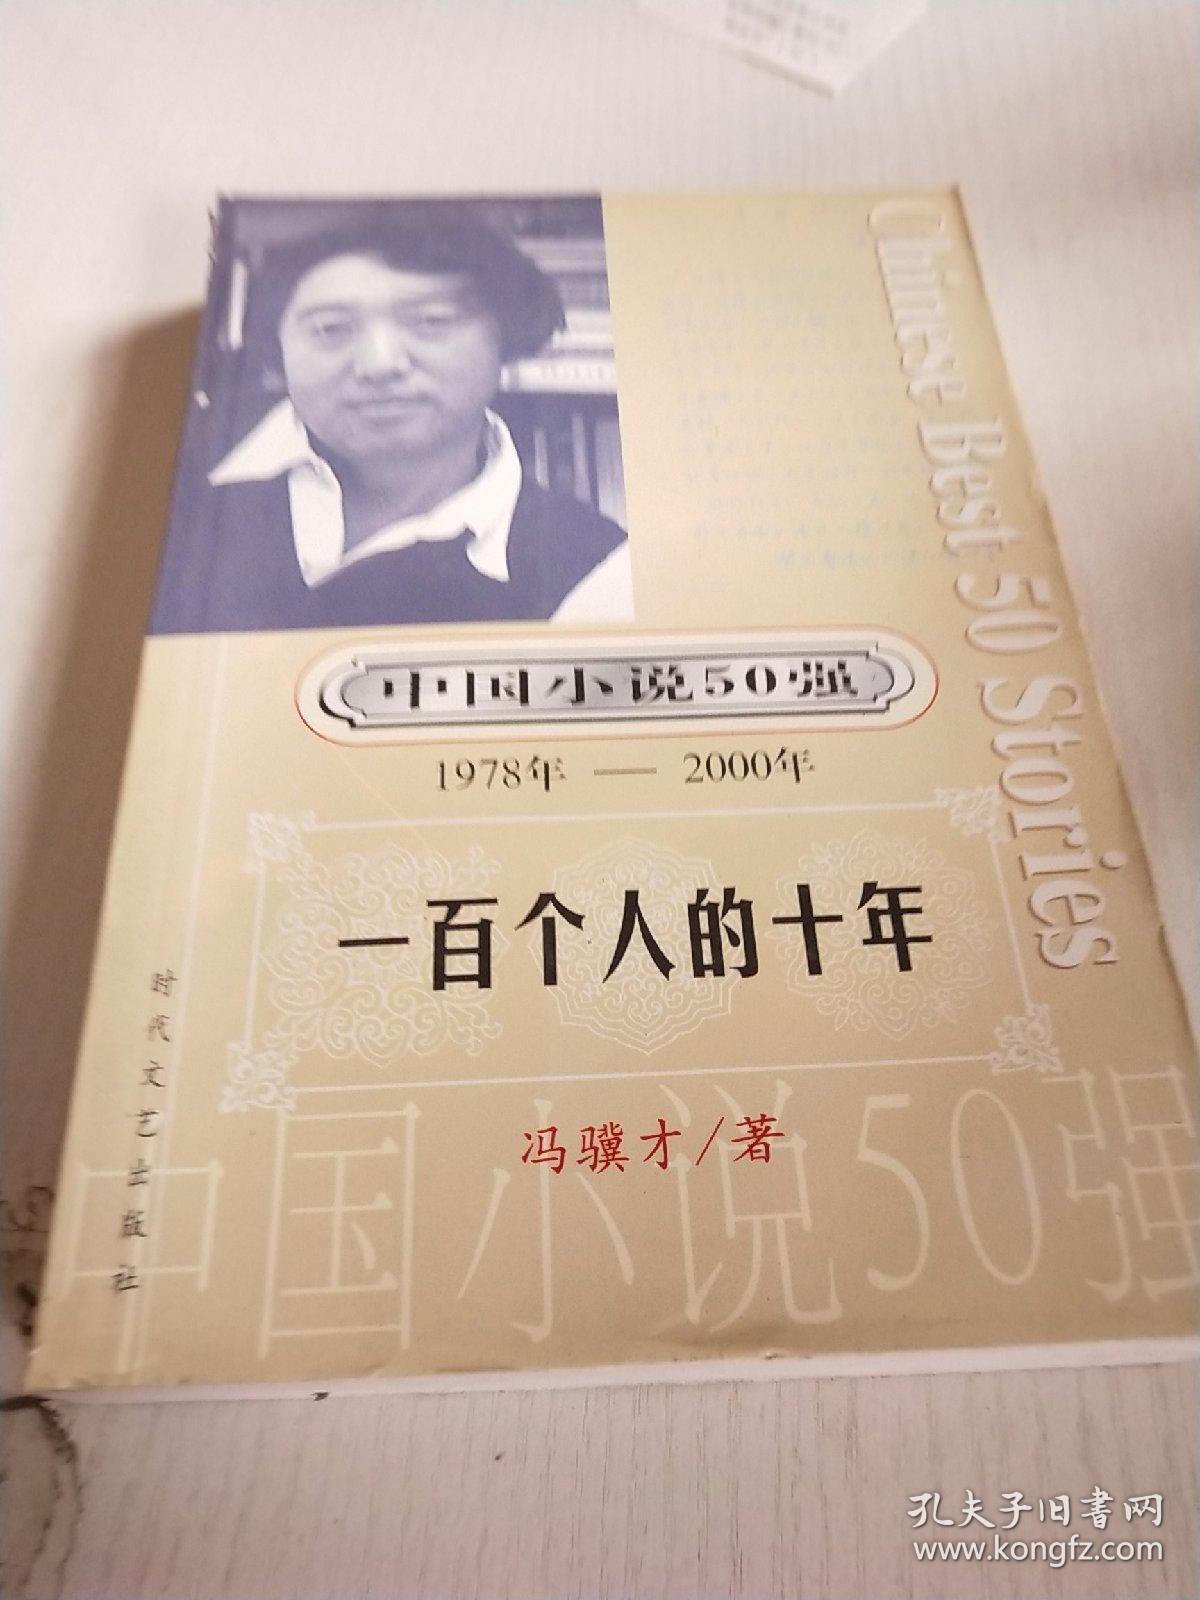 一百个人的十年:中国小说50强1978-2000